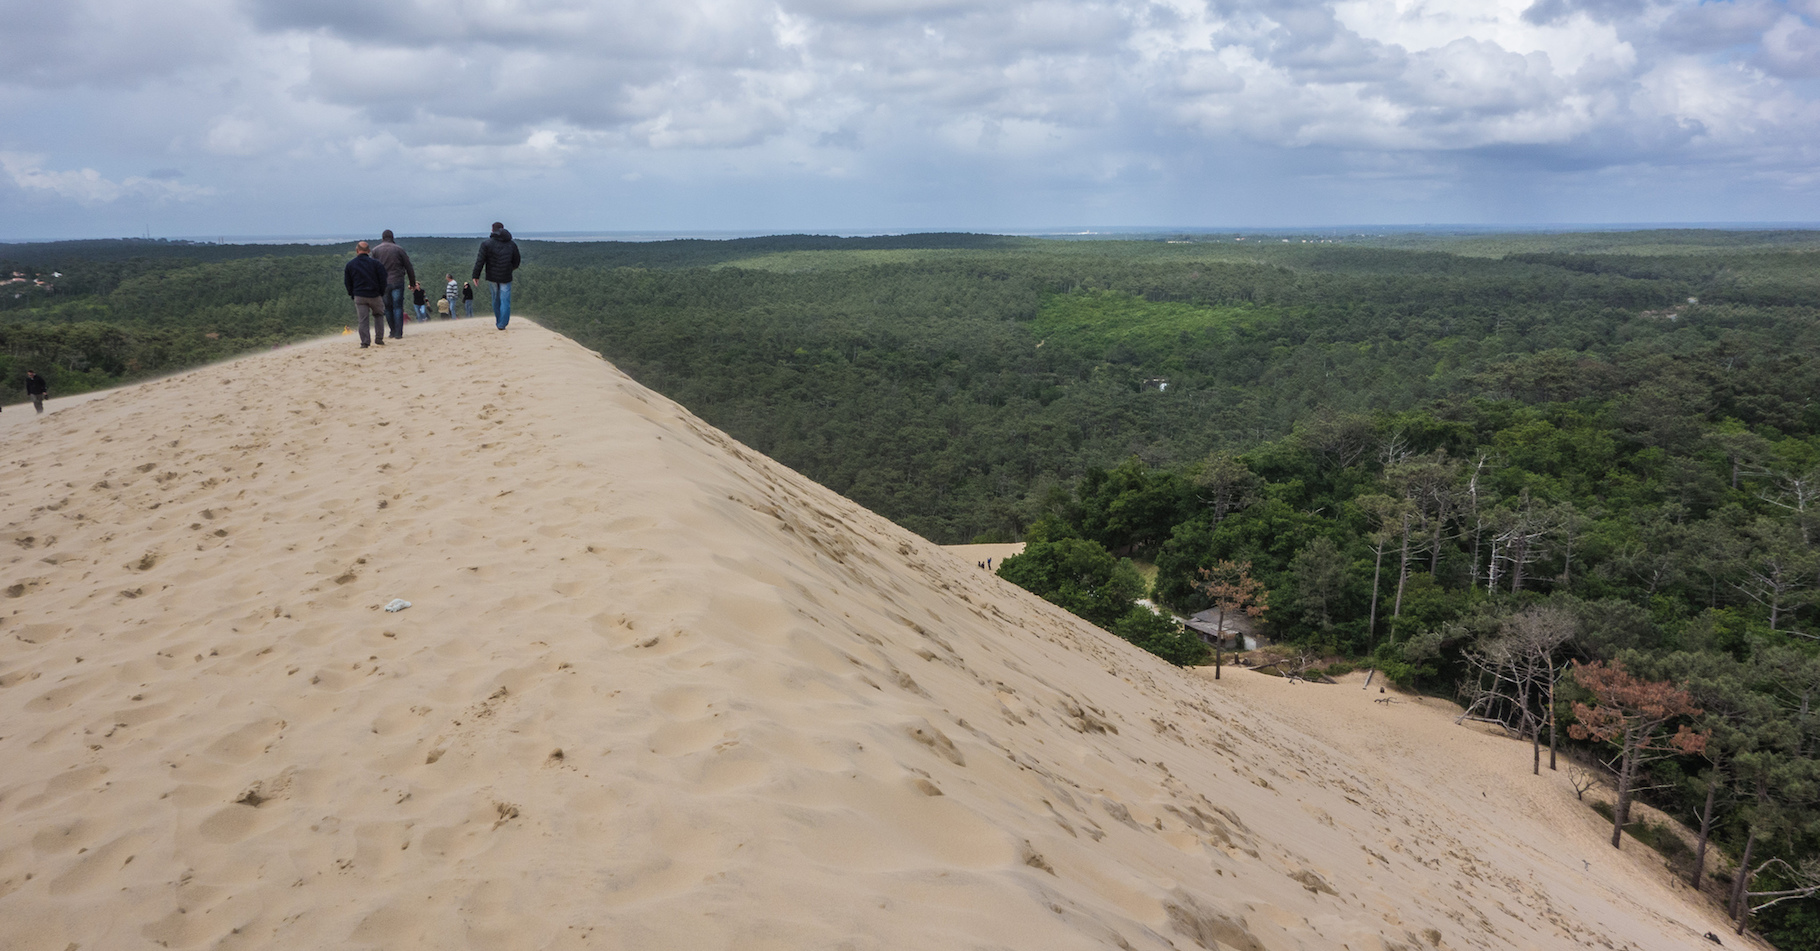 En 2016, la dune du Pilat culmine à 109,20 mètres d’altitude. © Graeme Churchard, Flickr, CC by 2.0